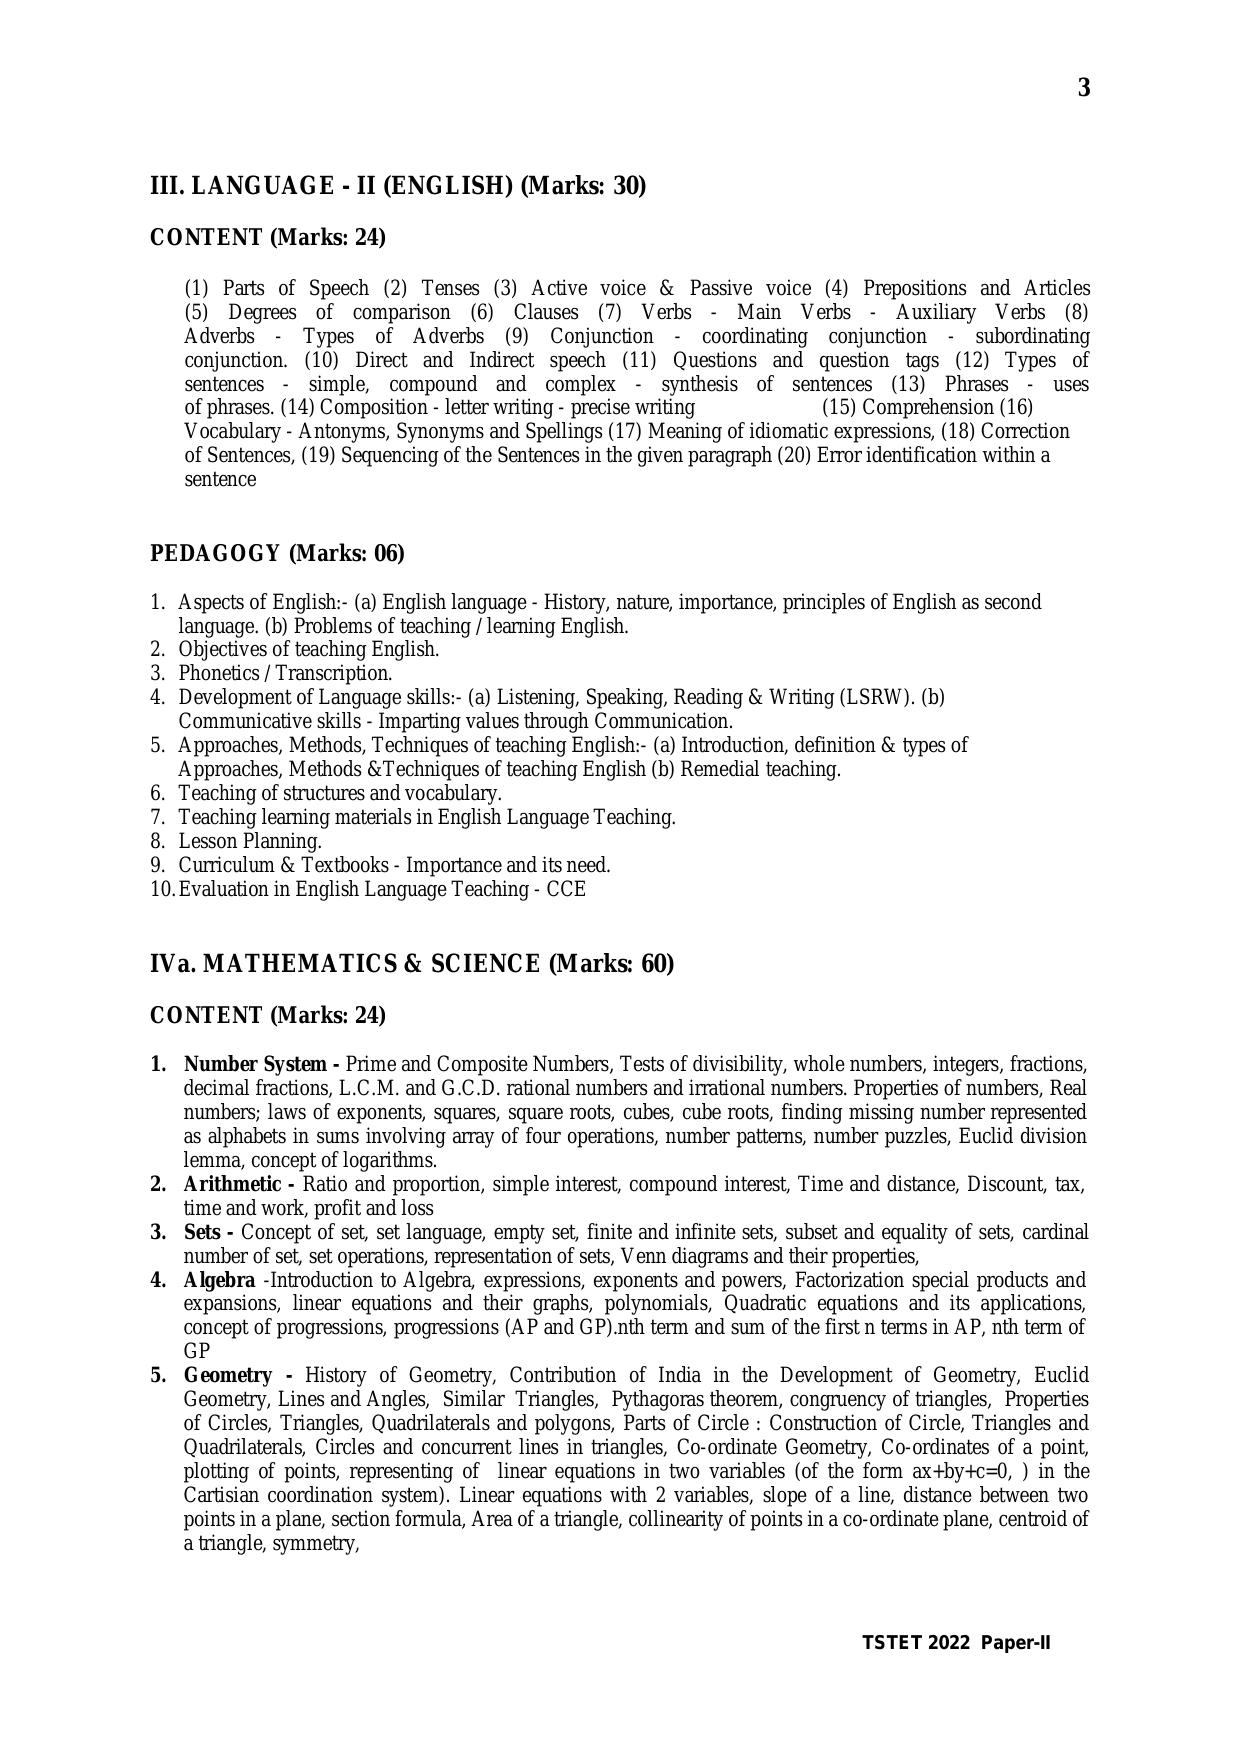 TS TET Syllabus for Paper 2 (Hindi) - Page 3